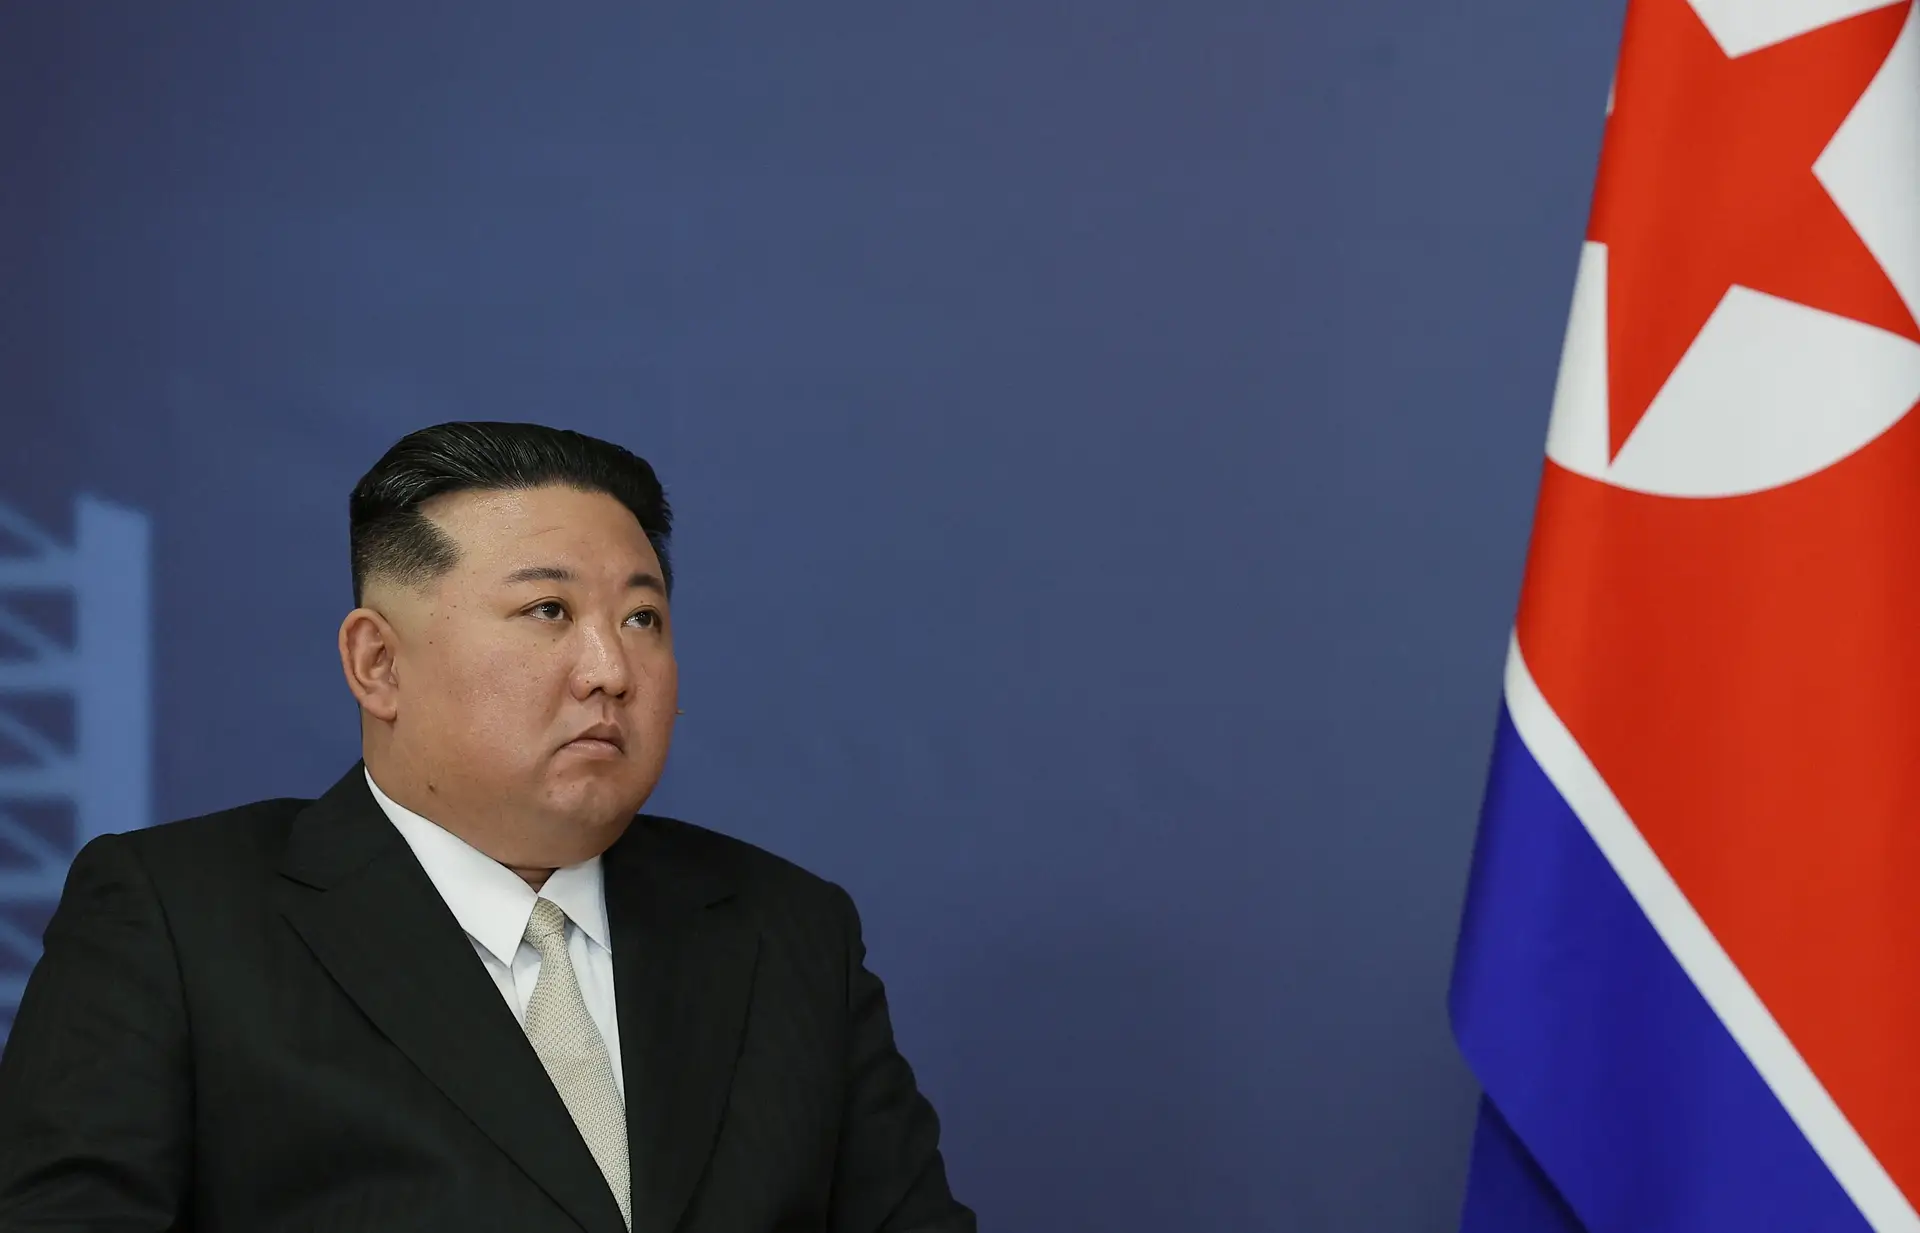 Se o Norte provocar, o Sul “retaliará muitas vezes mais forte”: retórica da  guerra é a tónica dominante entre as duas Coreias - Expresso